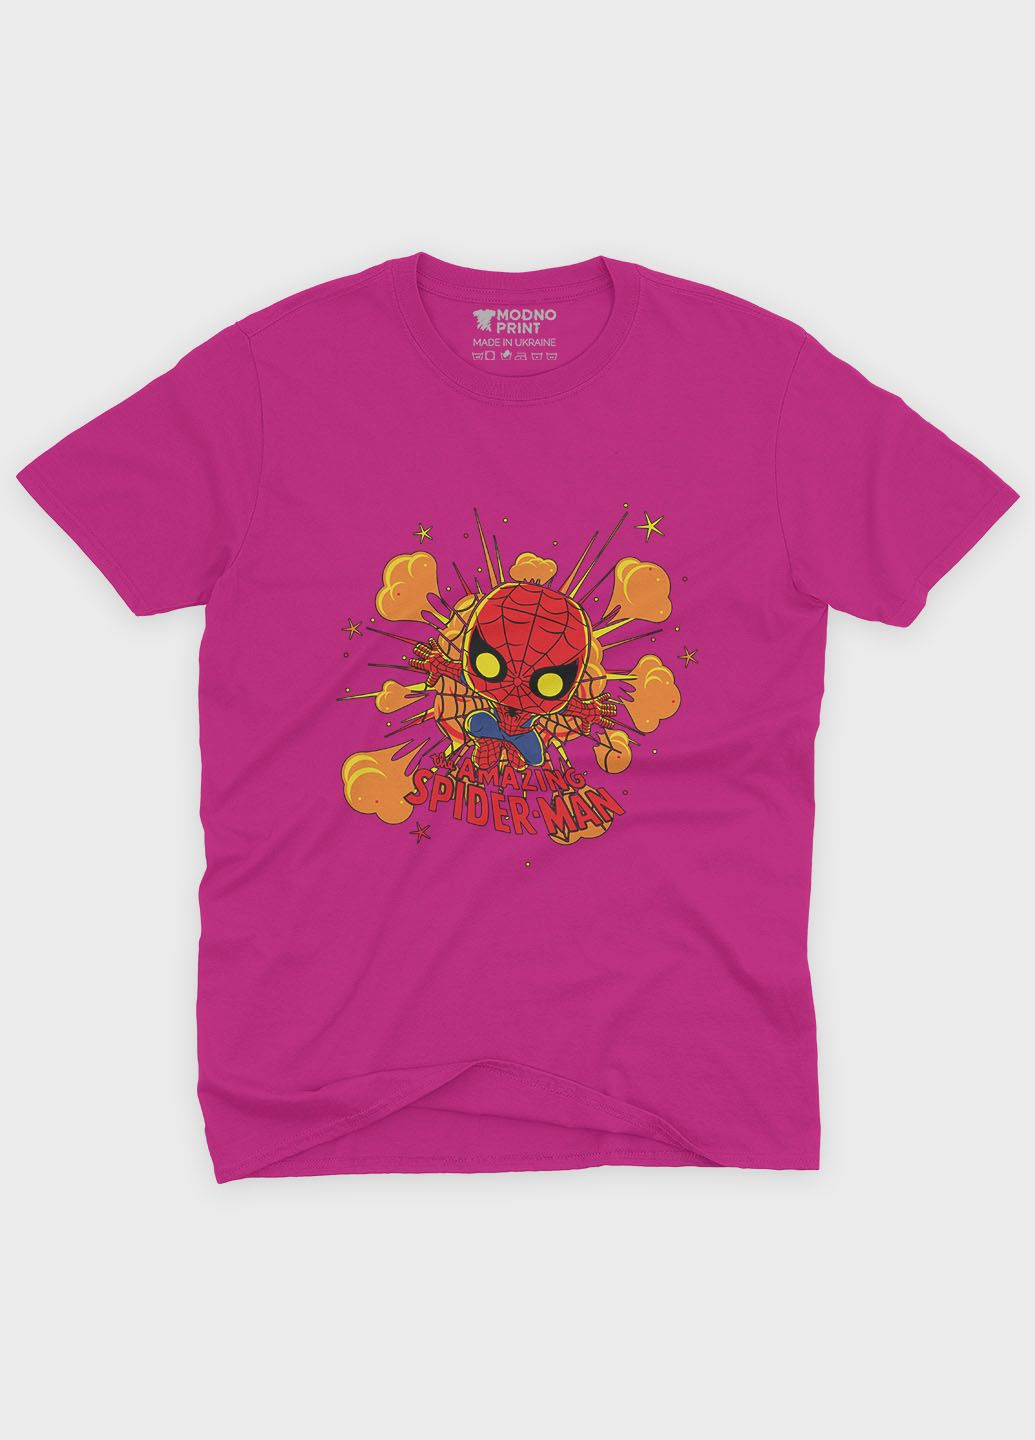 Розовая демисезонная футболка для мальчика с принтом супергероя - человек-паук (ts001-1-fuxj-006-014-056-b) Modno